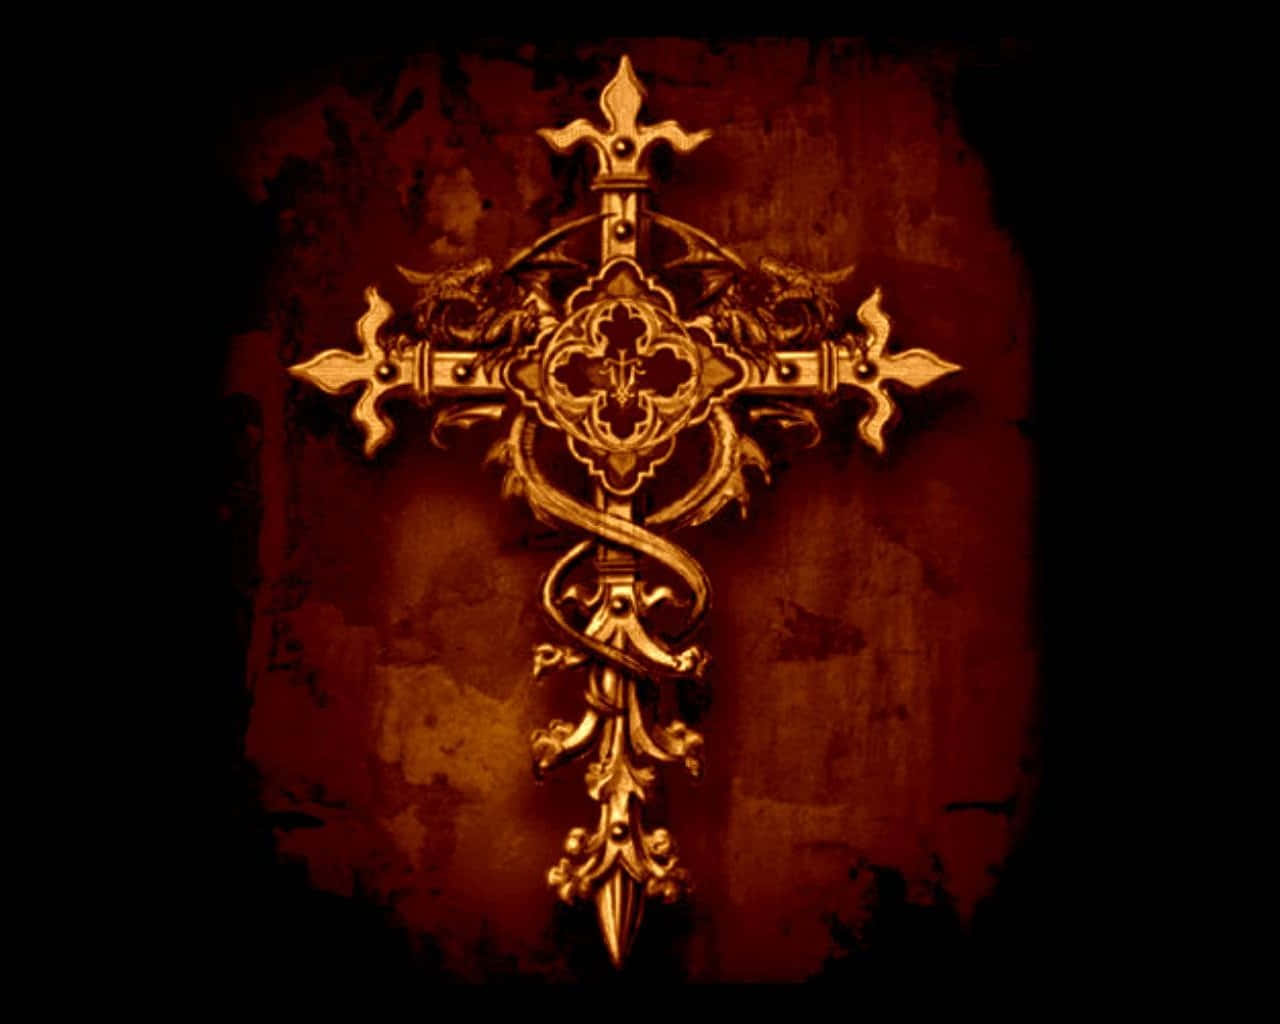 Feieredeinen Christlichen Glauben Mit Diesem Niedlichen Kreuz-design Wallpaper